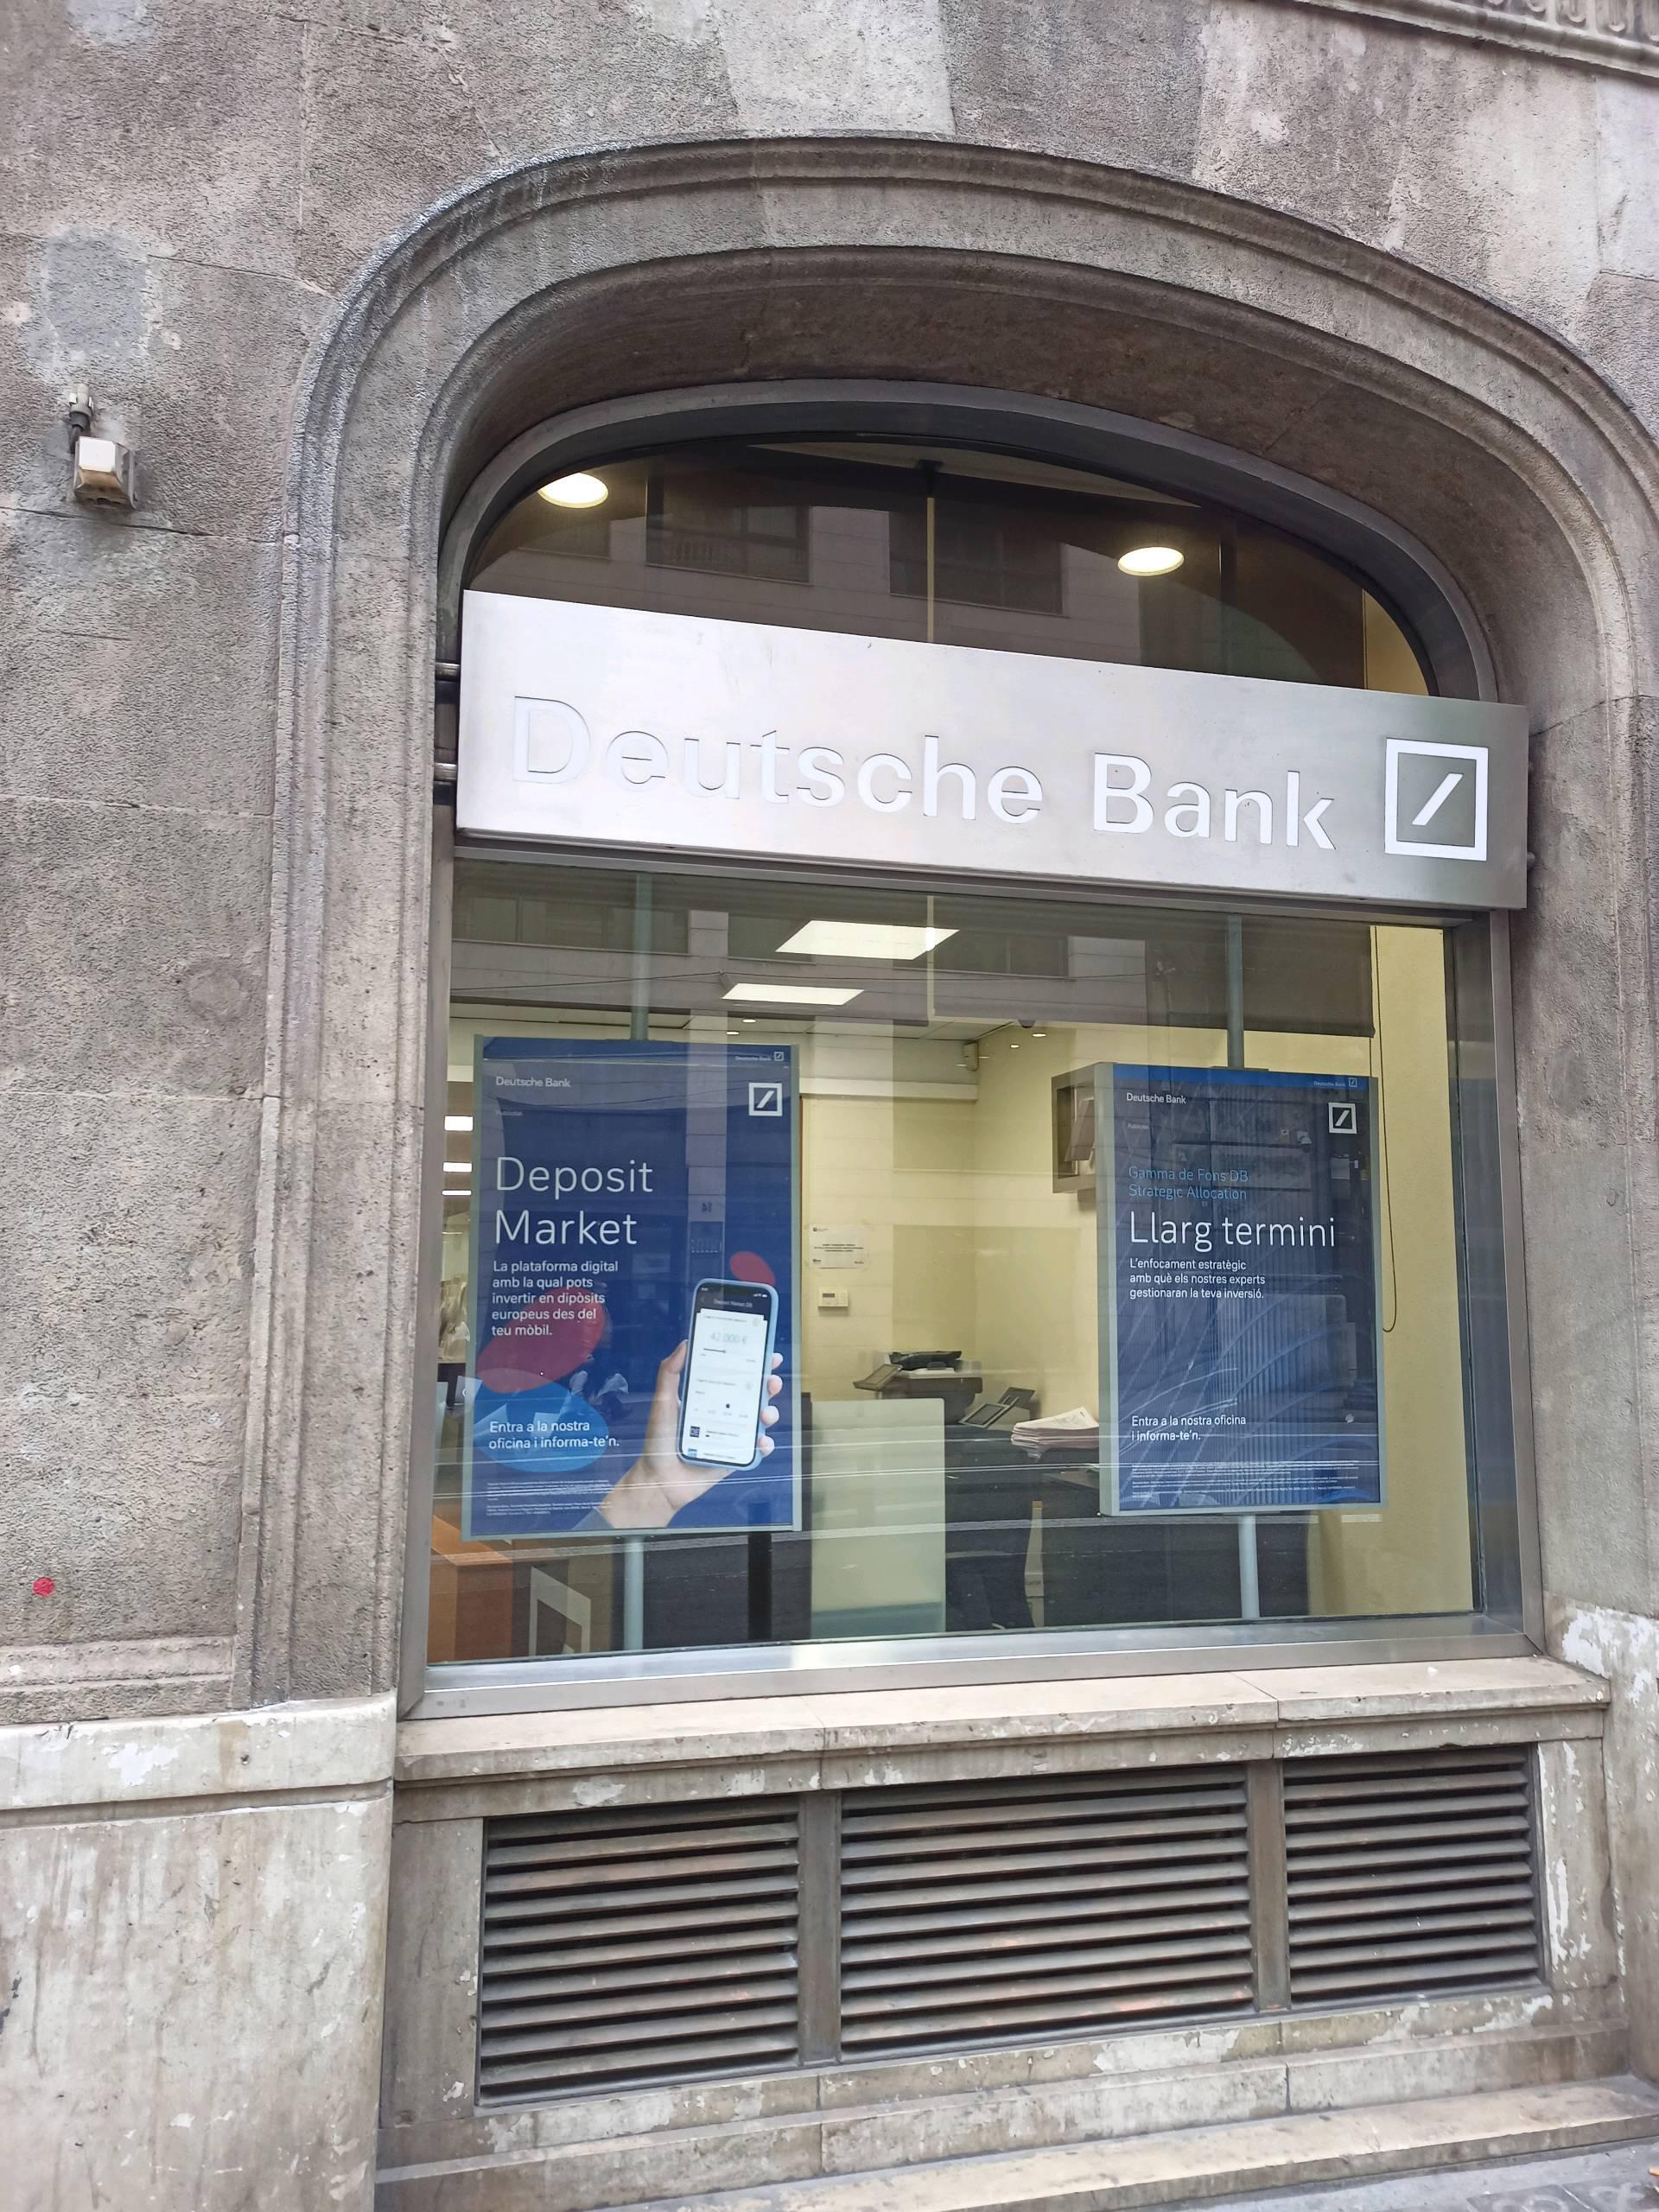 Deutsche Bank Barcelona